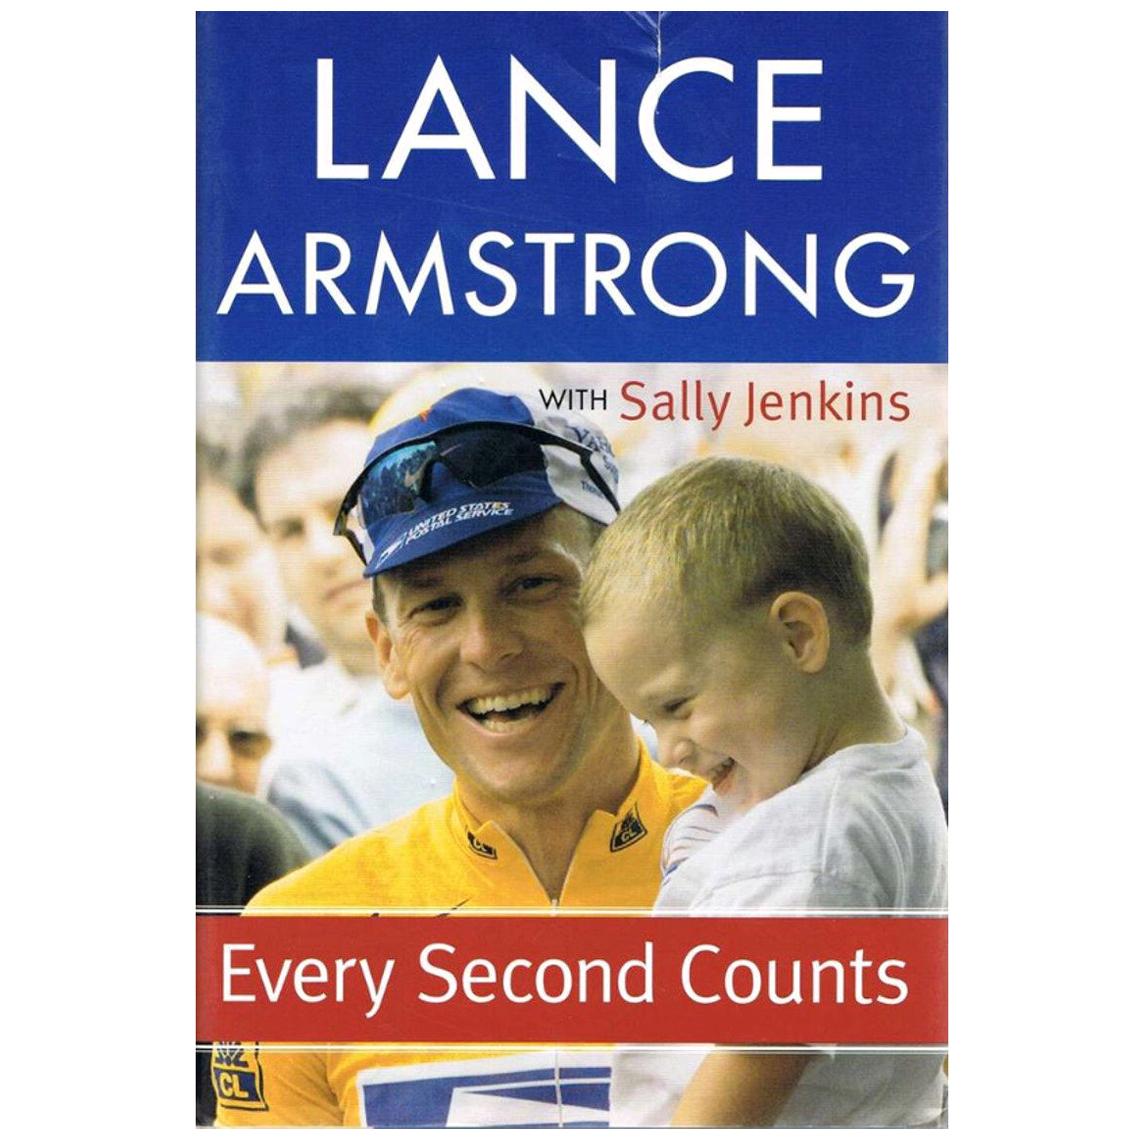 Autographe de Lance Armstrong sur une copie de son autobiographie, 21e siècle